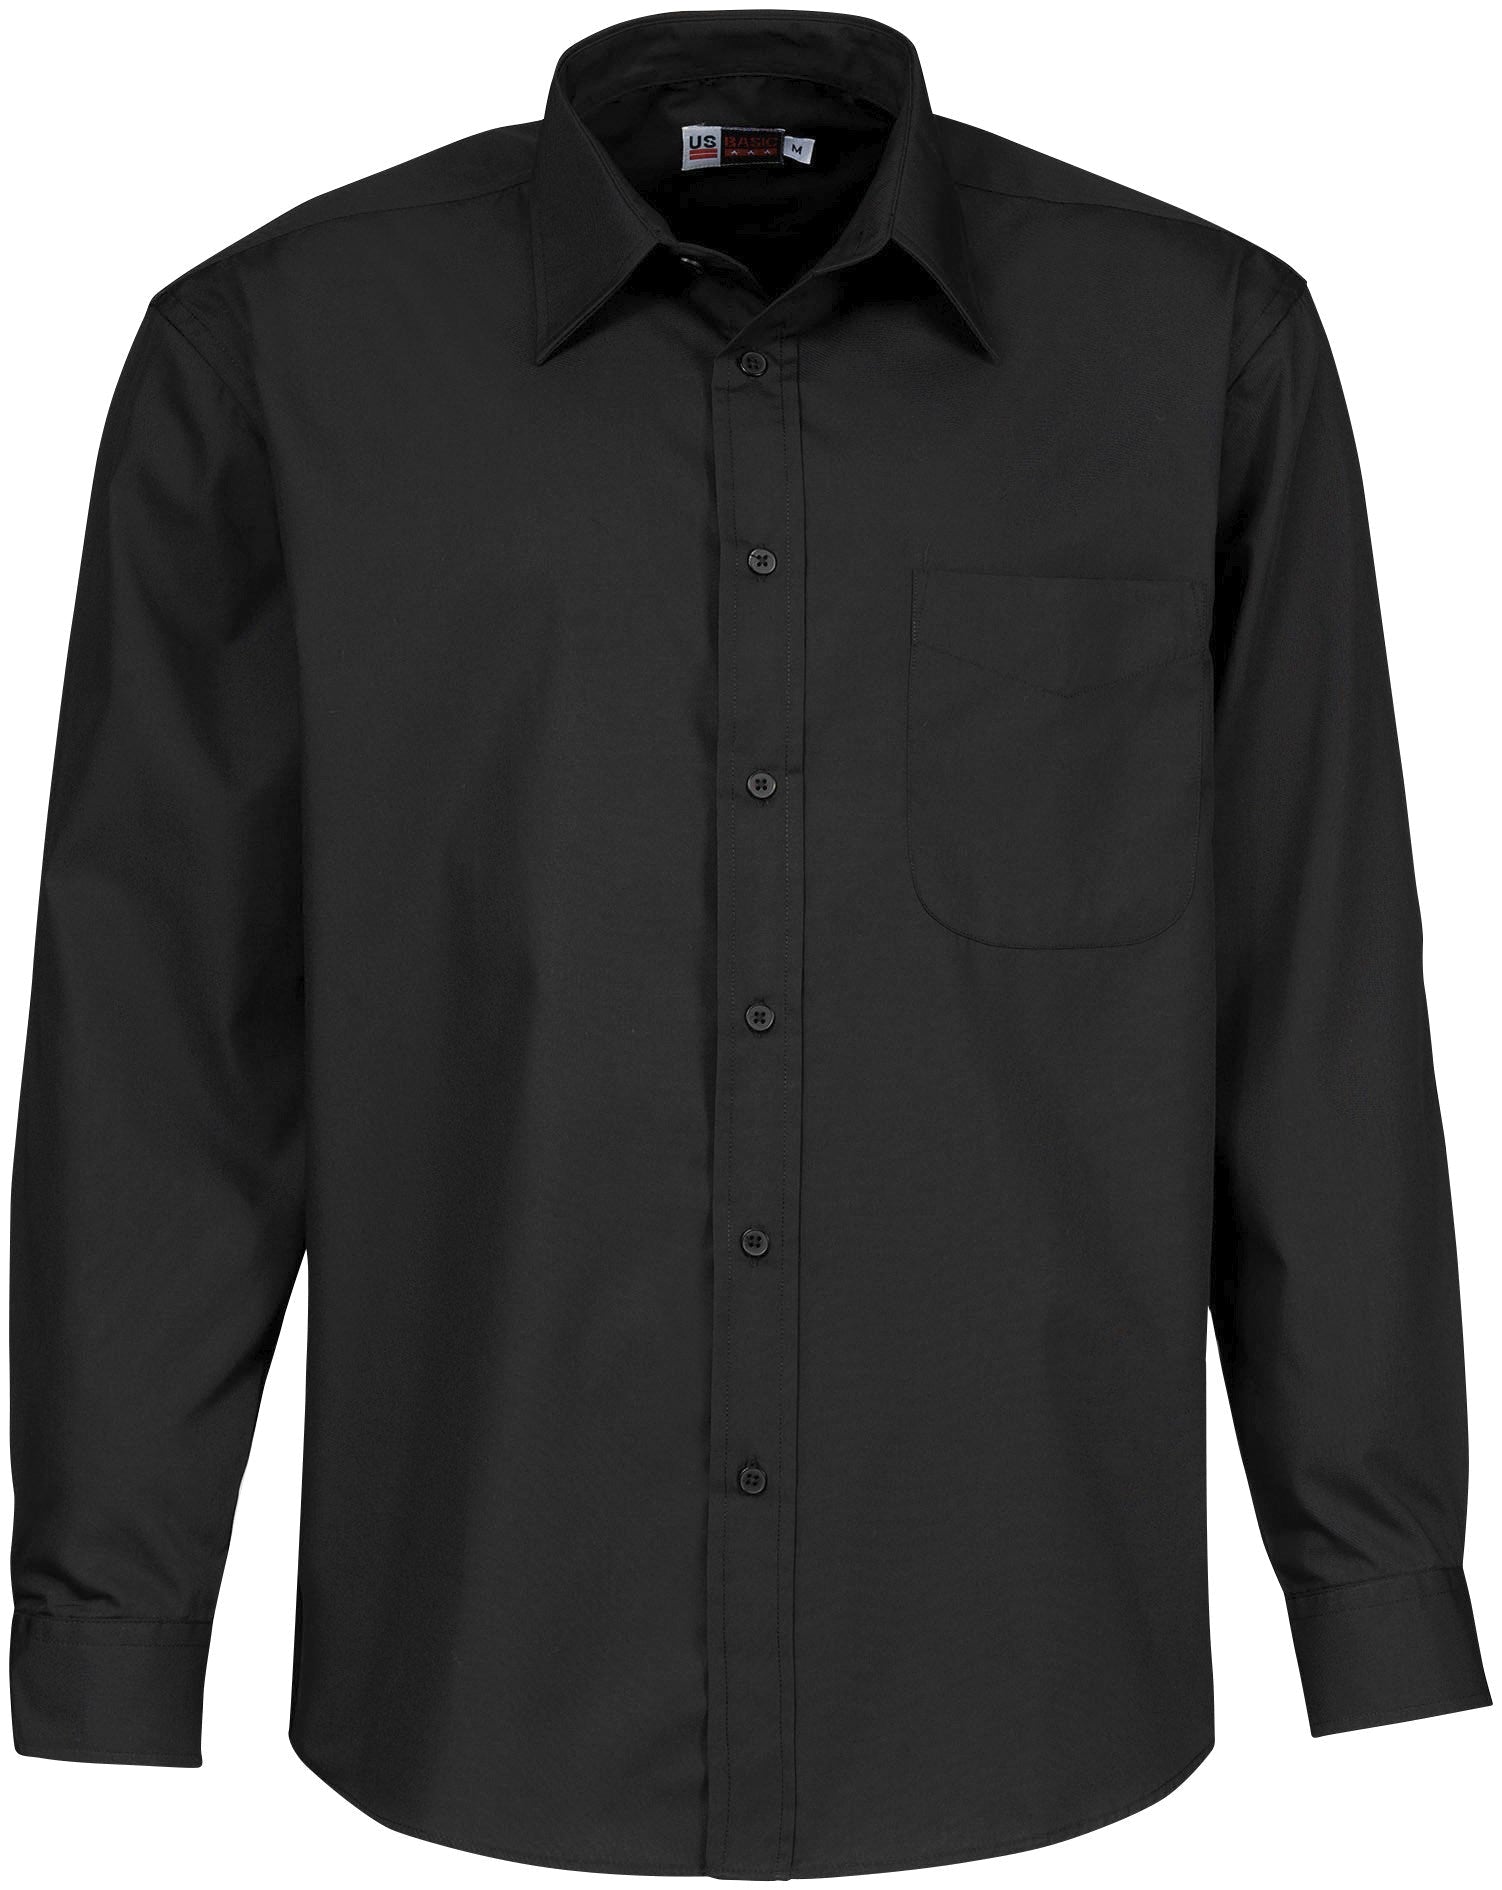 Mens Long Sleeve Washington Shirt - Black Only-2XL-Black-BL